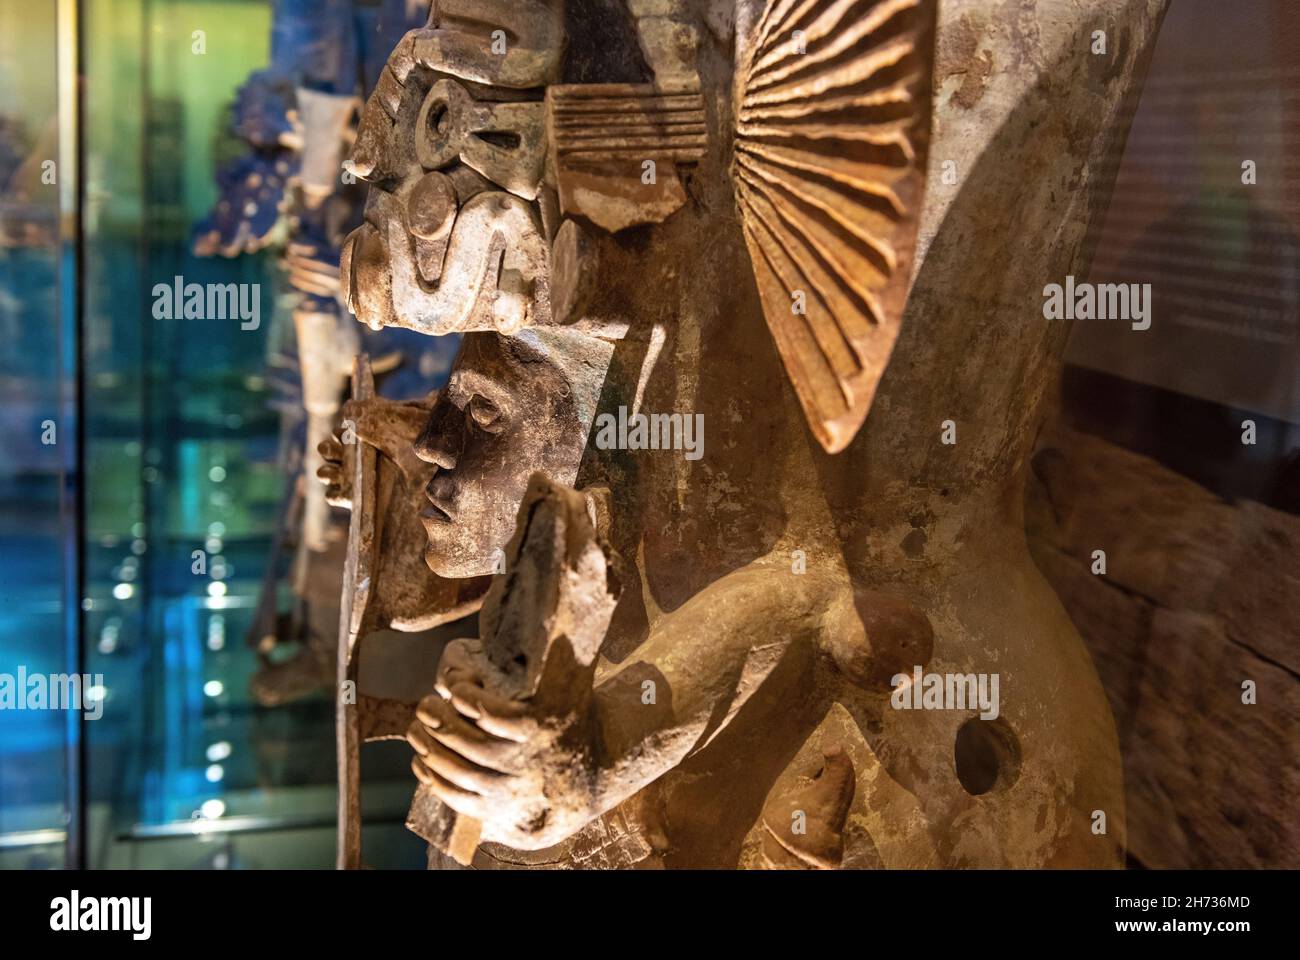 Statue en céramique et portrait de sculpture d'un roi maya, Mexico, Mexique.Concentrez-vous sur le visage. Banque D'Images